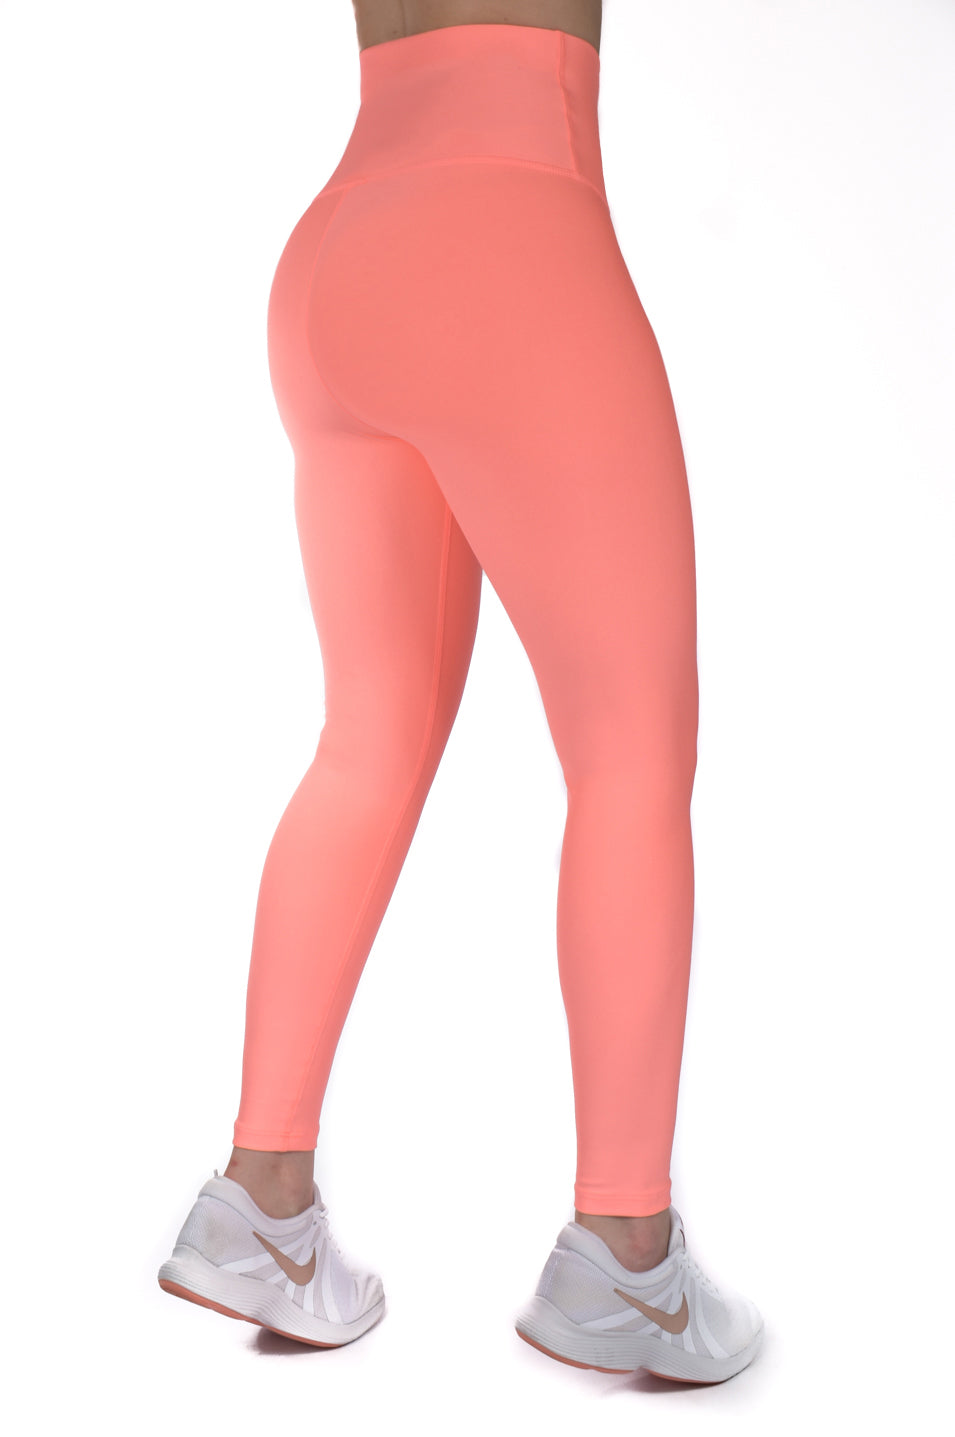 Legging deportivos mujer Multicolor Metalizado - Carioca Active Wear -  Leggings y mallas deportivas de mujer